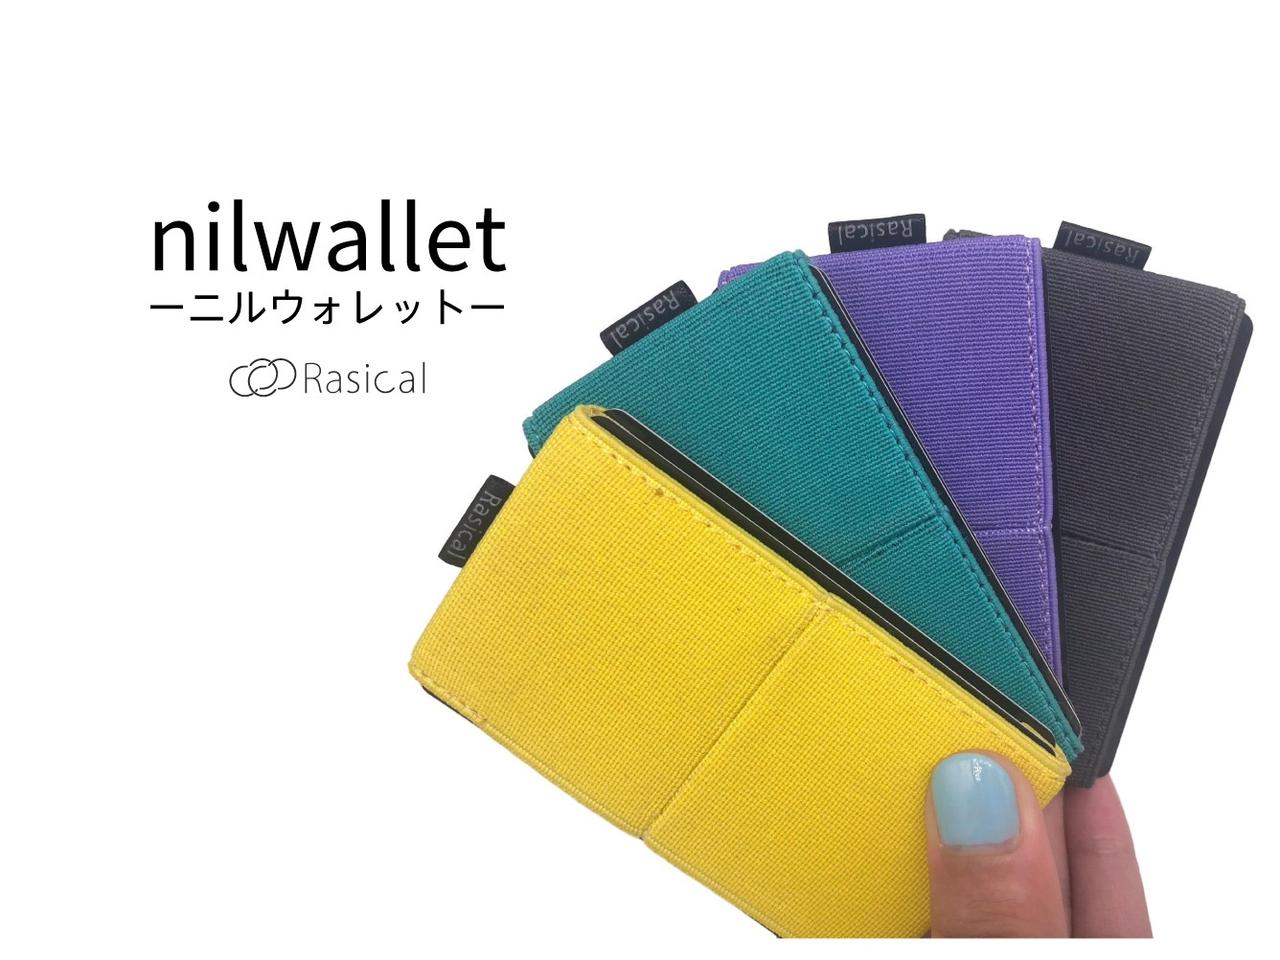 総重量わずか14g！ミニマルの限界に挑んだ財布｢nilwallet（ニルウォレット）｣がキャンペーン開始